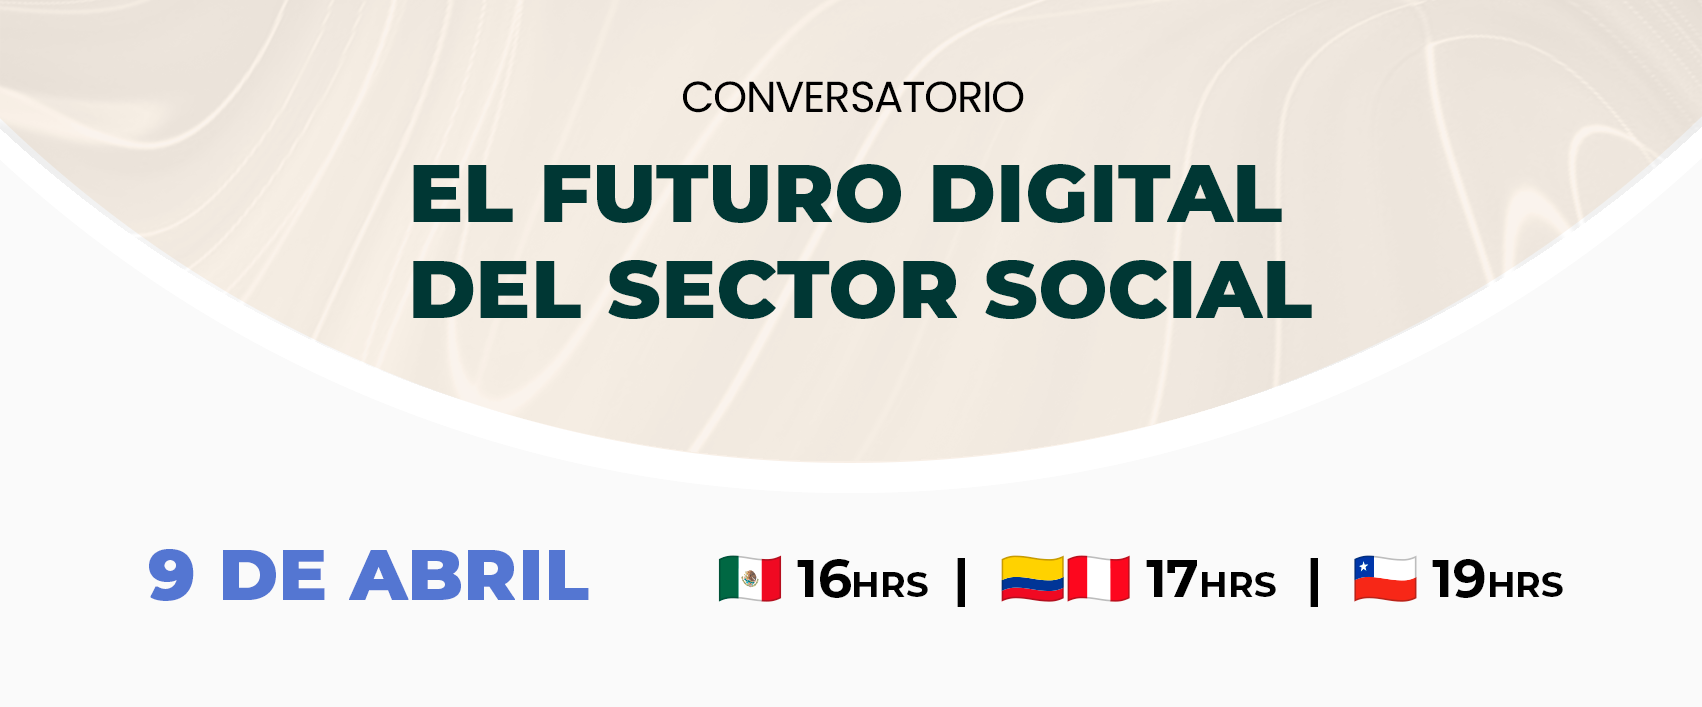 el futuro digital del sector social